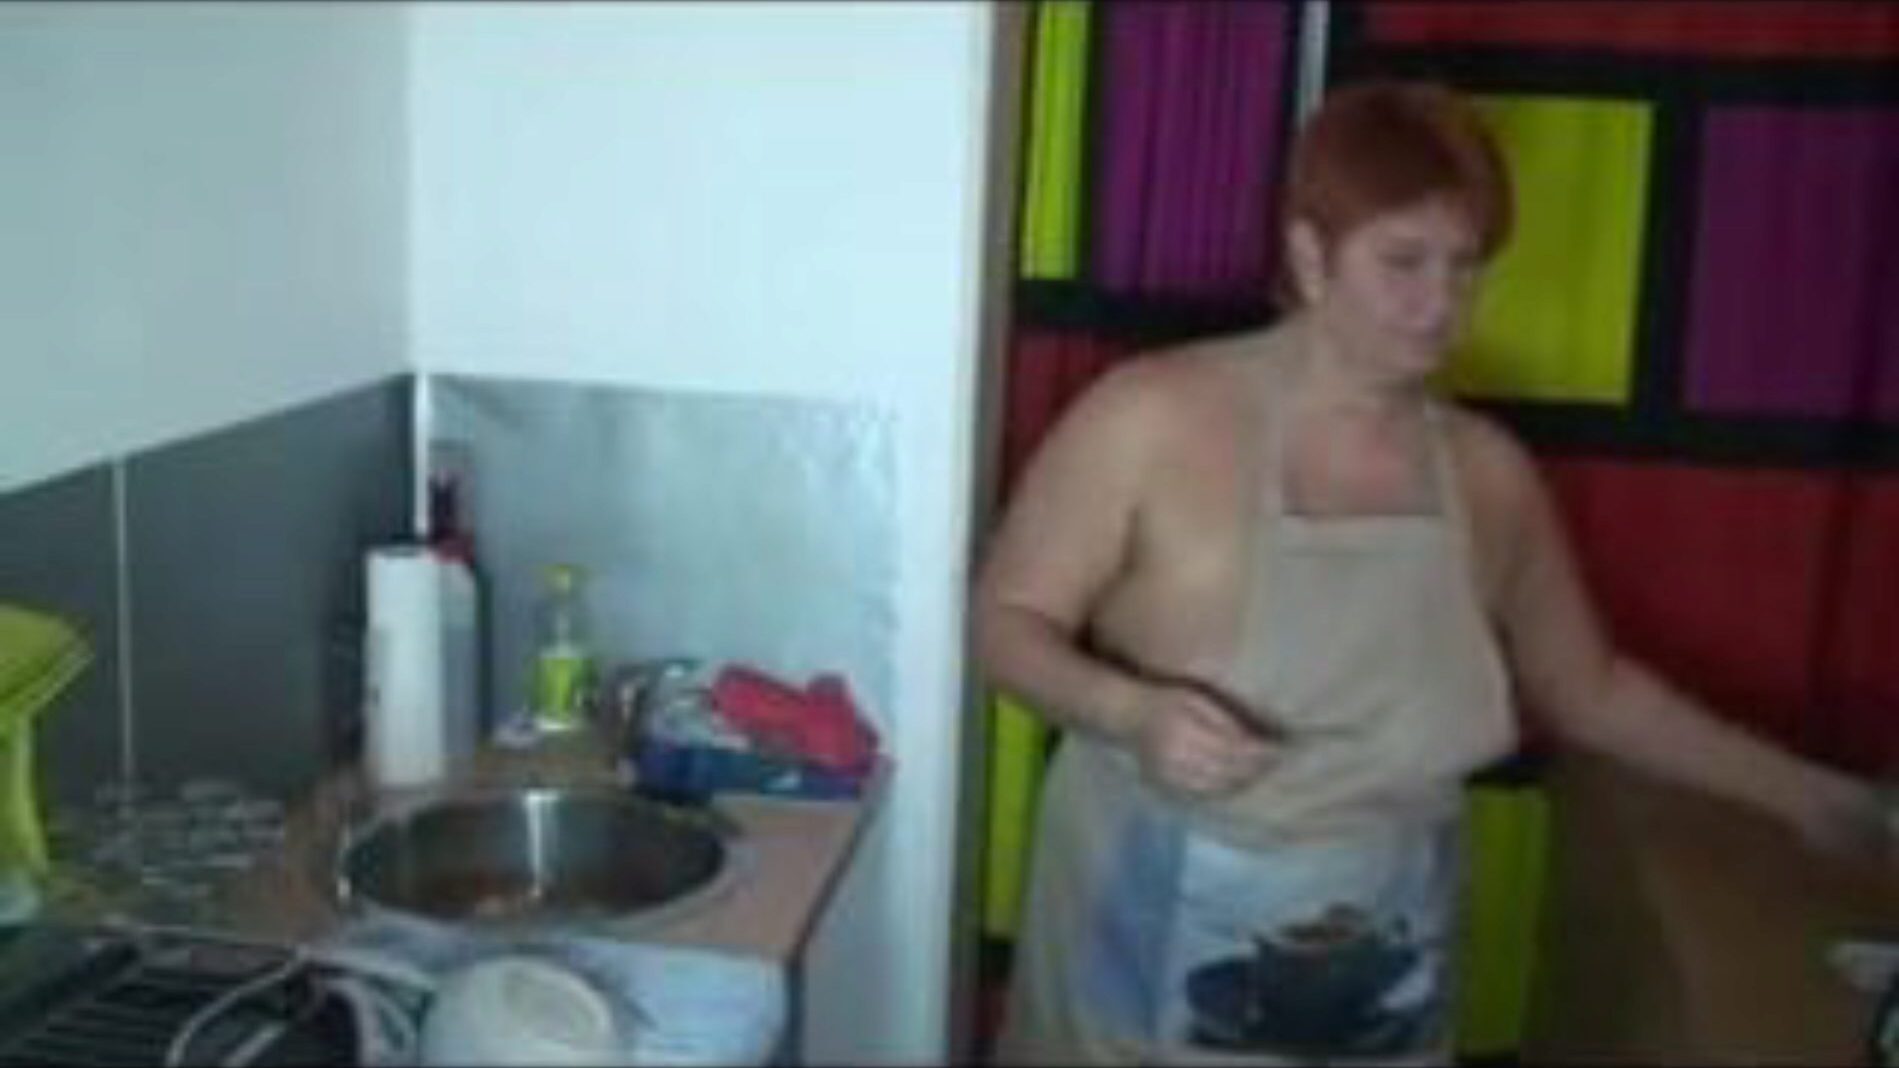 når du vasker op i køkkenet, gratis porno 55: xhamster se, når du vasker op i køkkenet klip på xhamster, det gigantiske sex-tube site med masser af gratis tyske hotteste og lydende porno vids